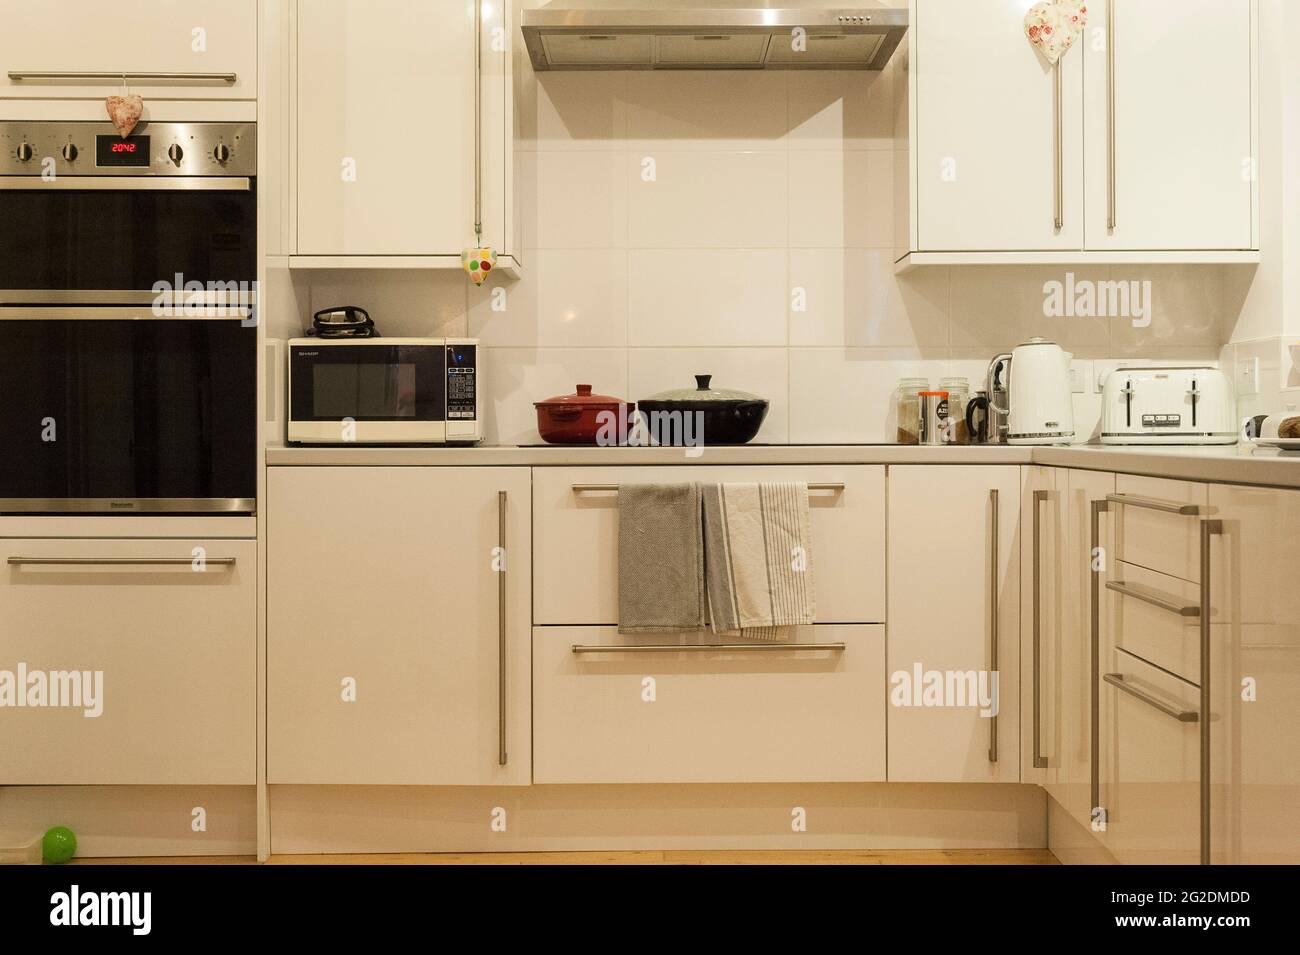 Innenaufnahmen einer echten Familienküche in einem authentischen, modernen Zuhause. Stockfoto